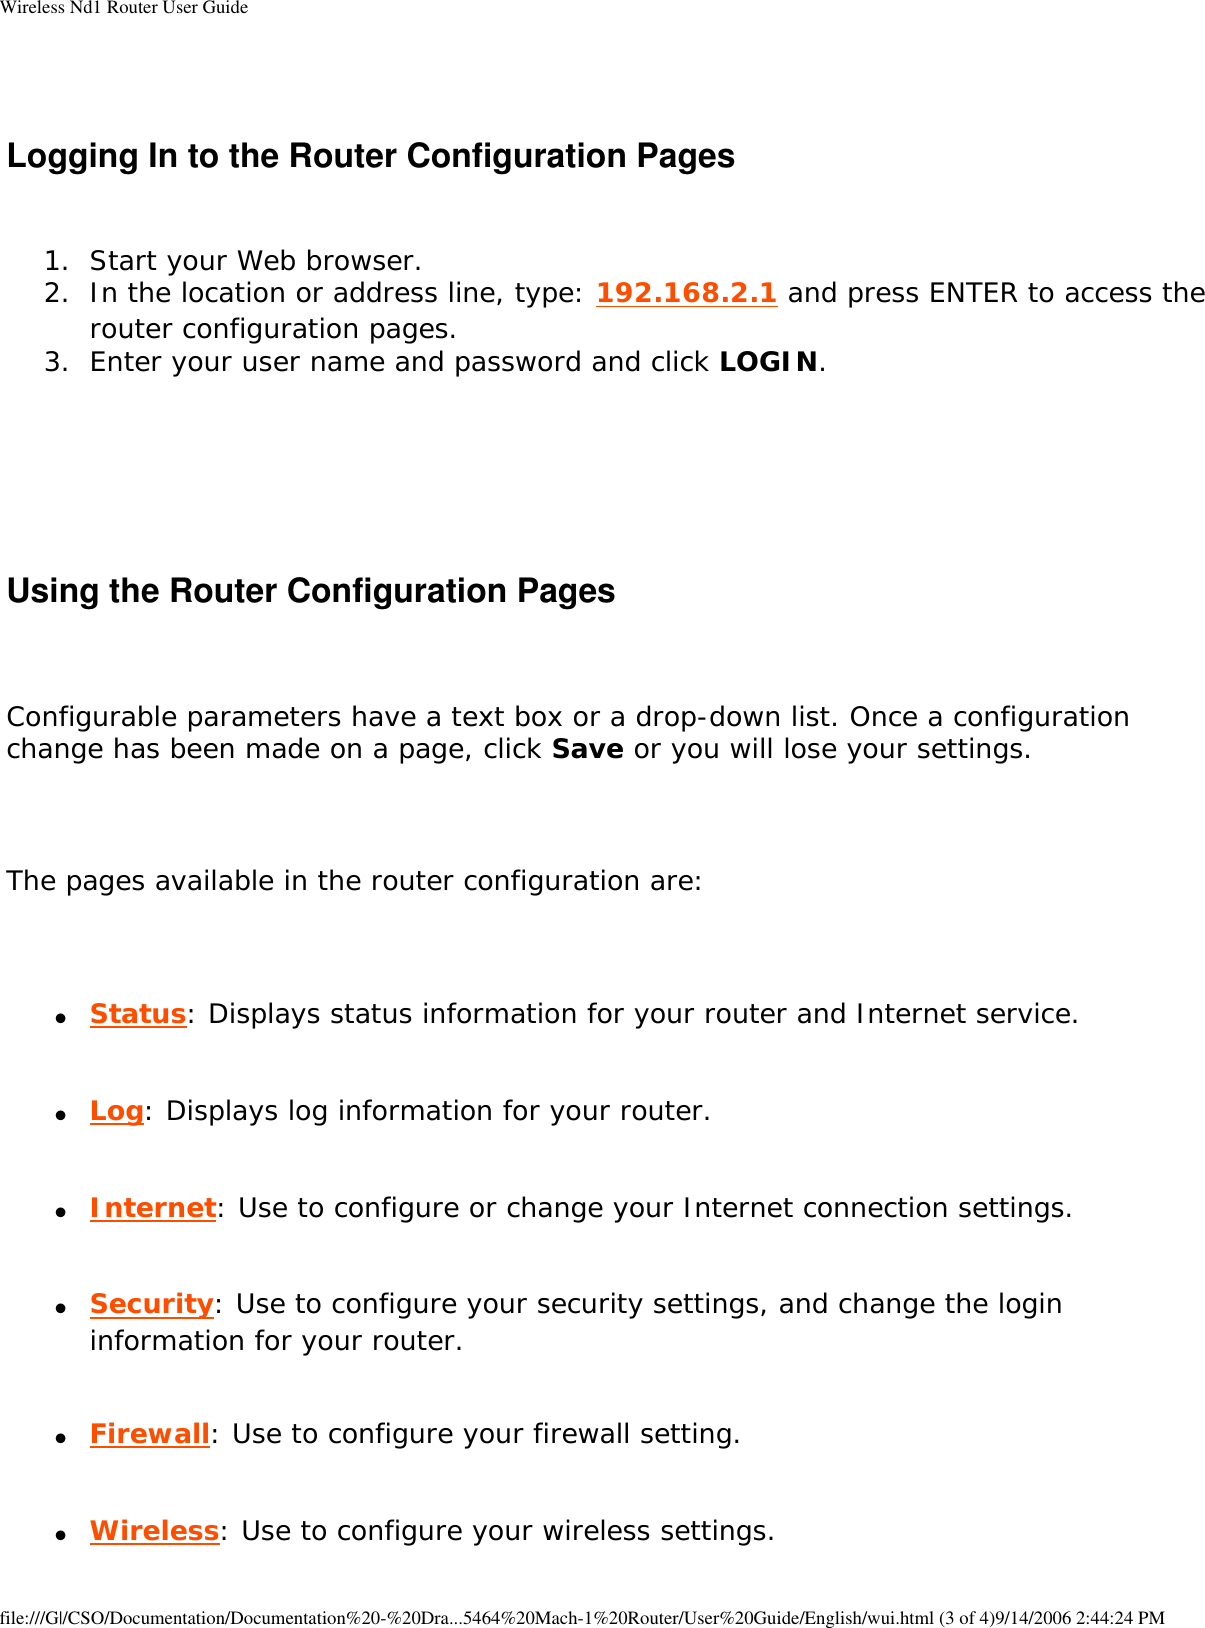 Page 72 of GemTek Technology R950630GN USRobotics Wireless Nd1 Router User Manual Wireless Nd1 Router User Guide